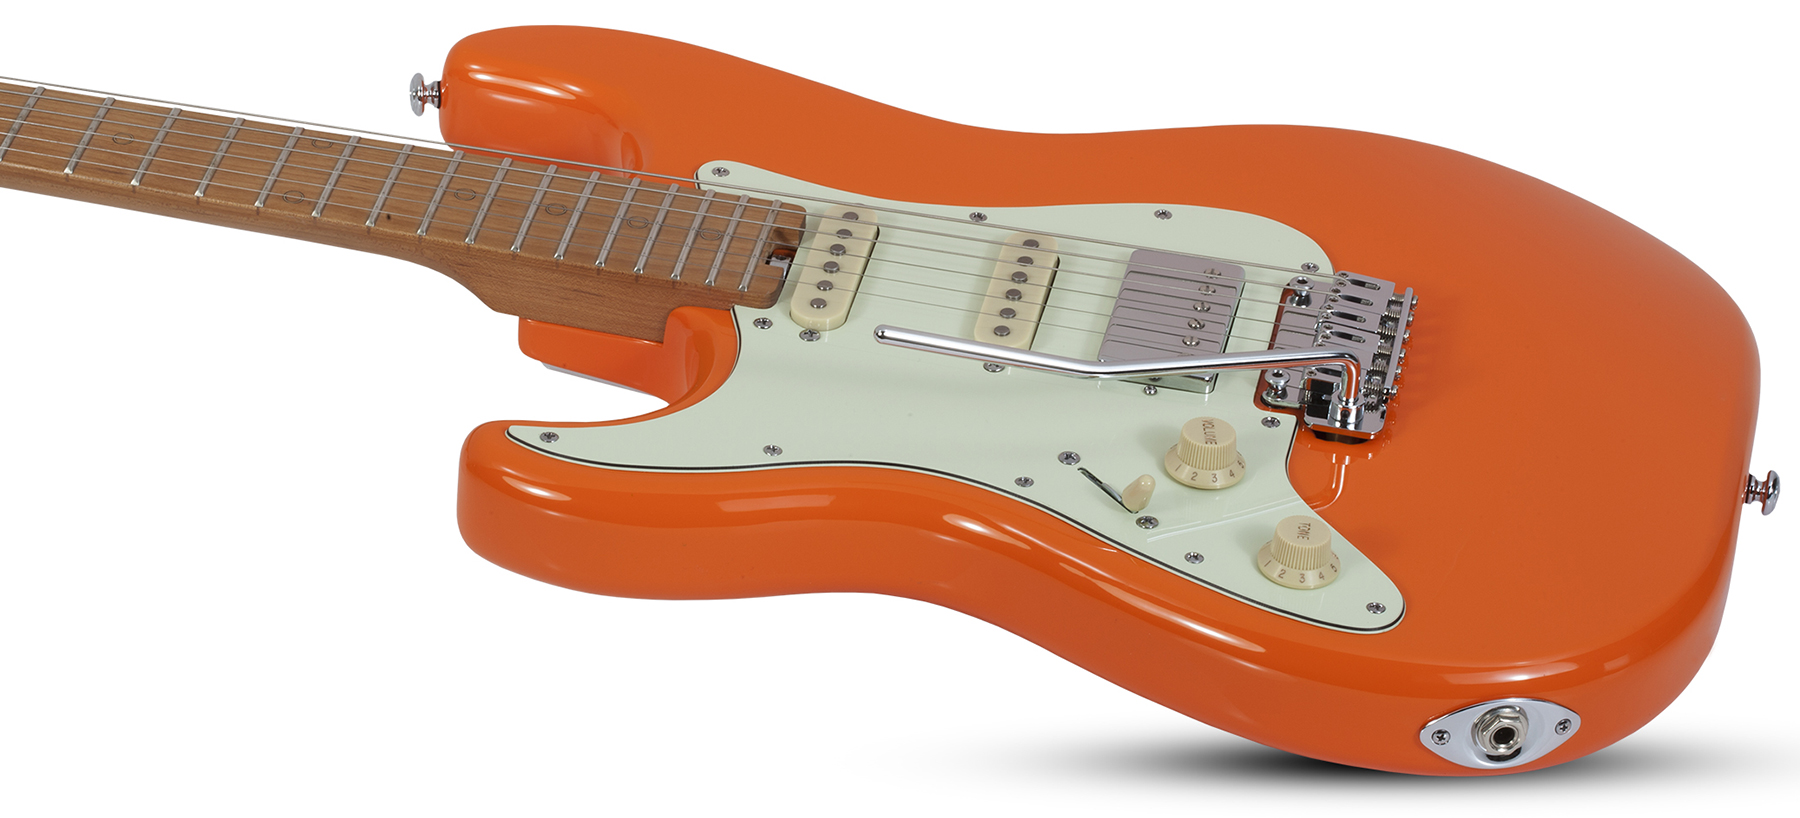 Schecter Nick Johnston Traditional Lh Gaucher Hss Trem Mn - Atomic Orange - Guitarra electrica para zurdos - Variation 1